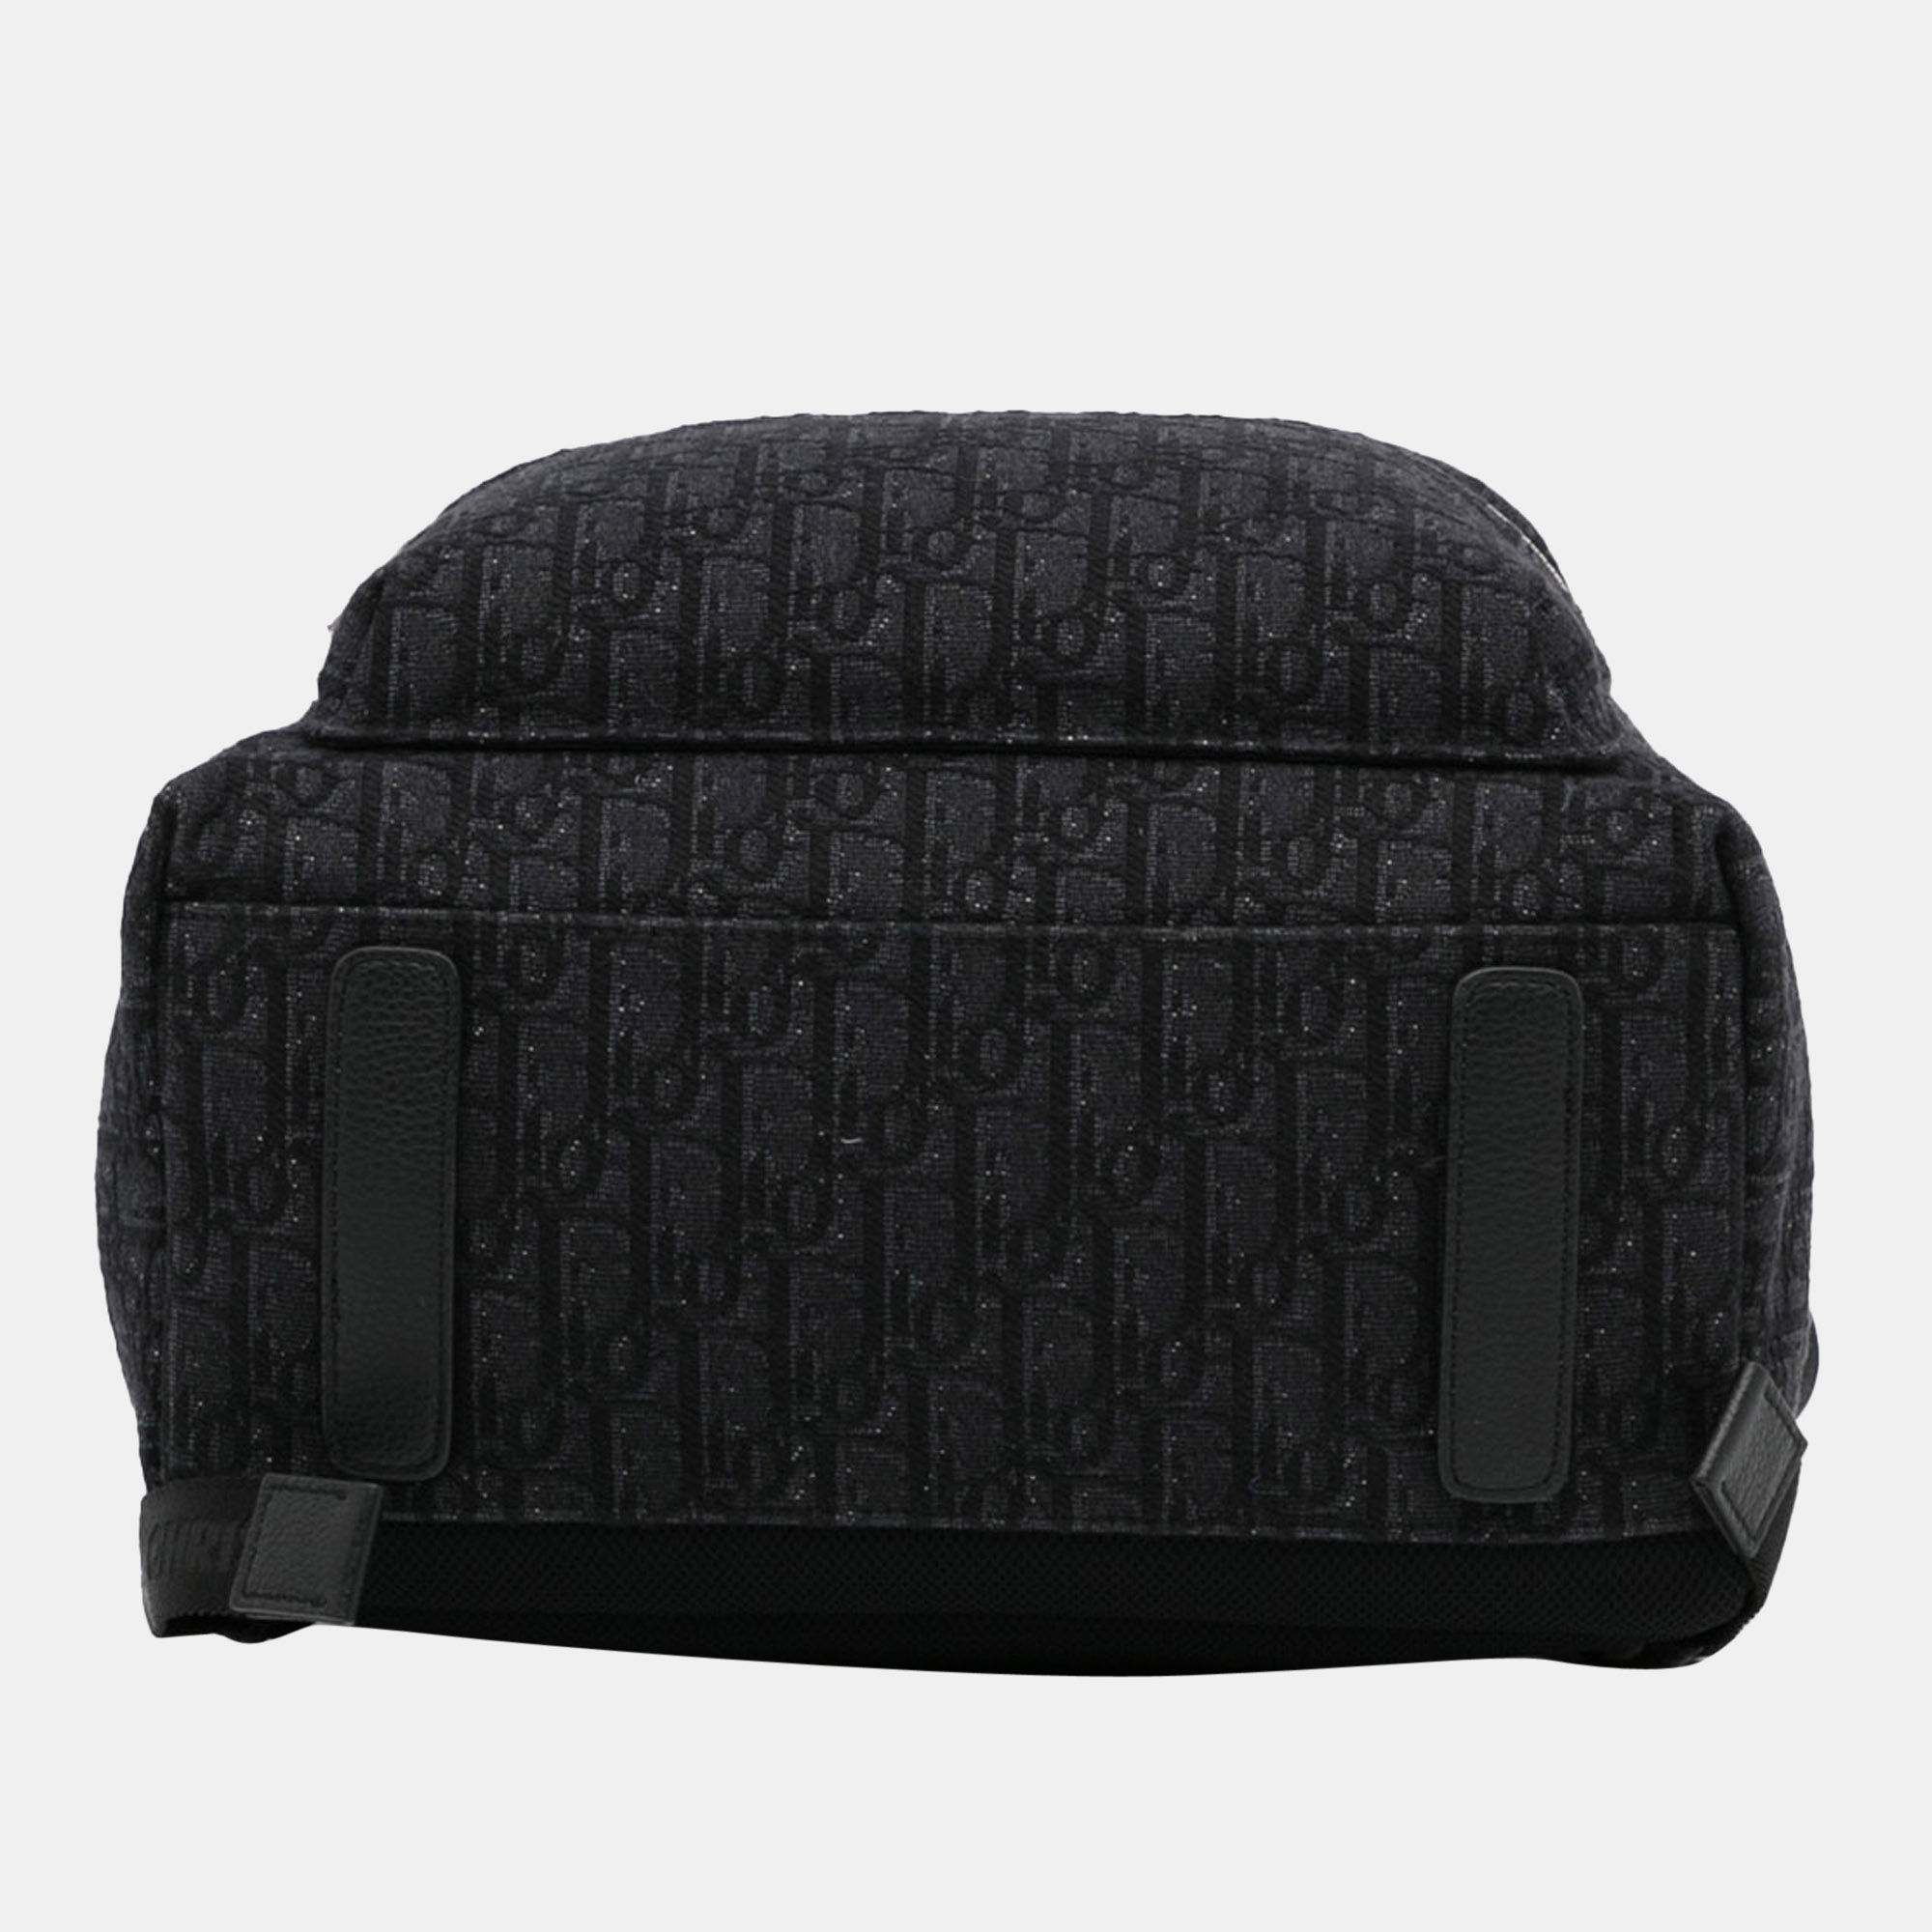 Dior Black Oblique Rider Backpack